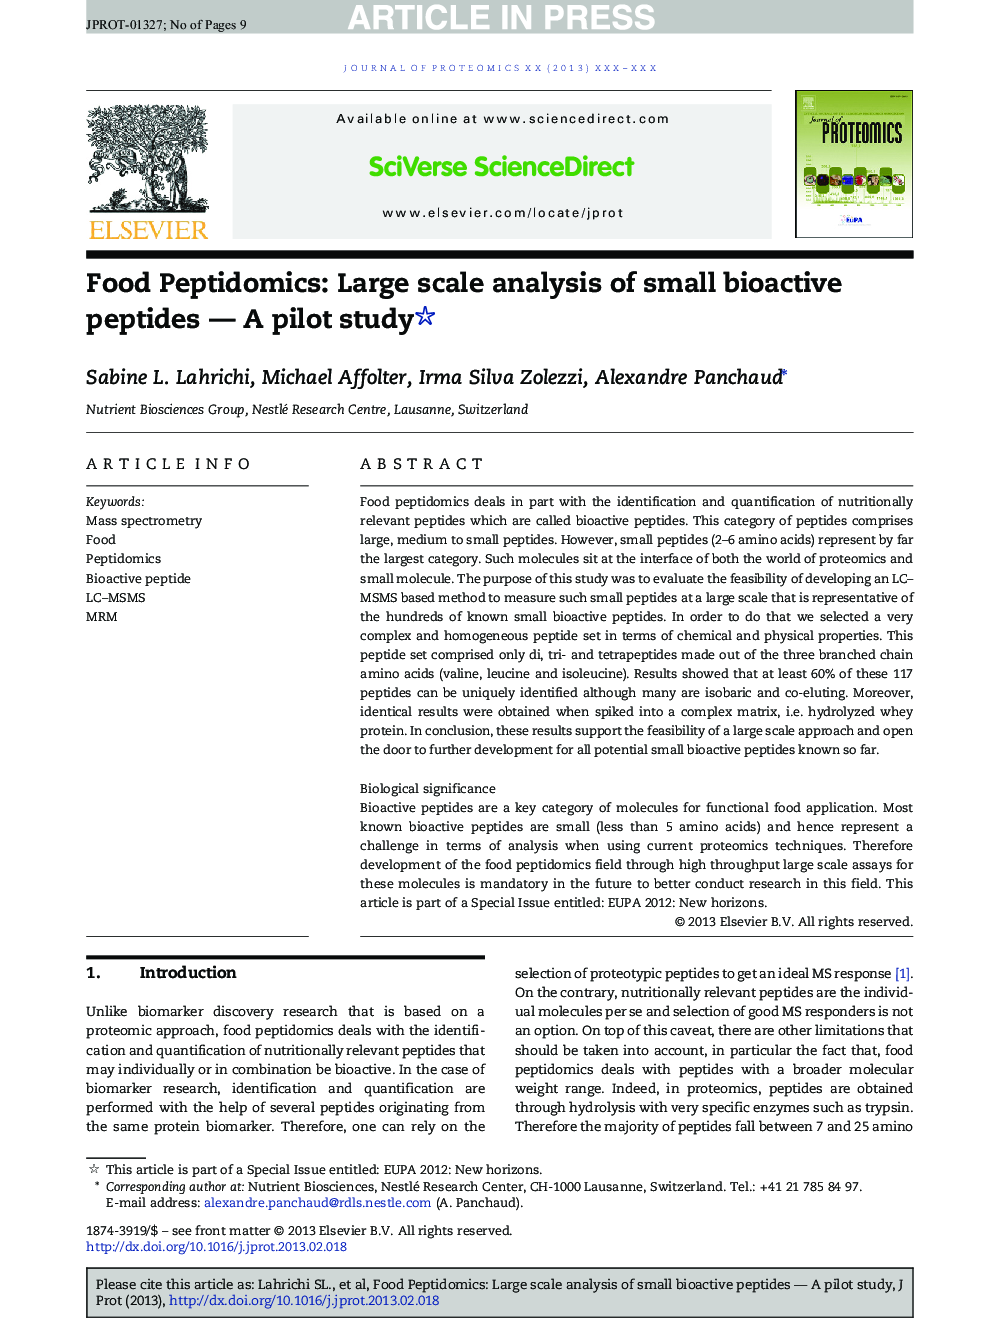 Food Peptidomics: Large scale analysis of small bioactive peptides - A pilot study